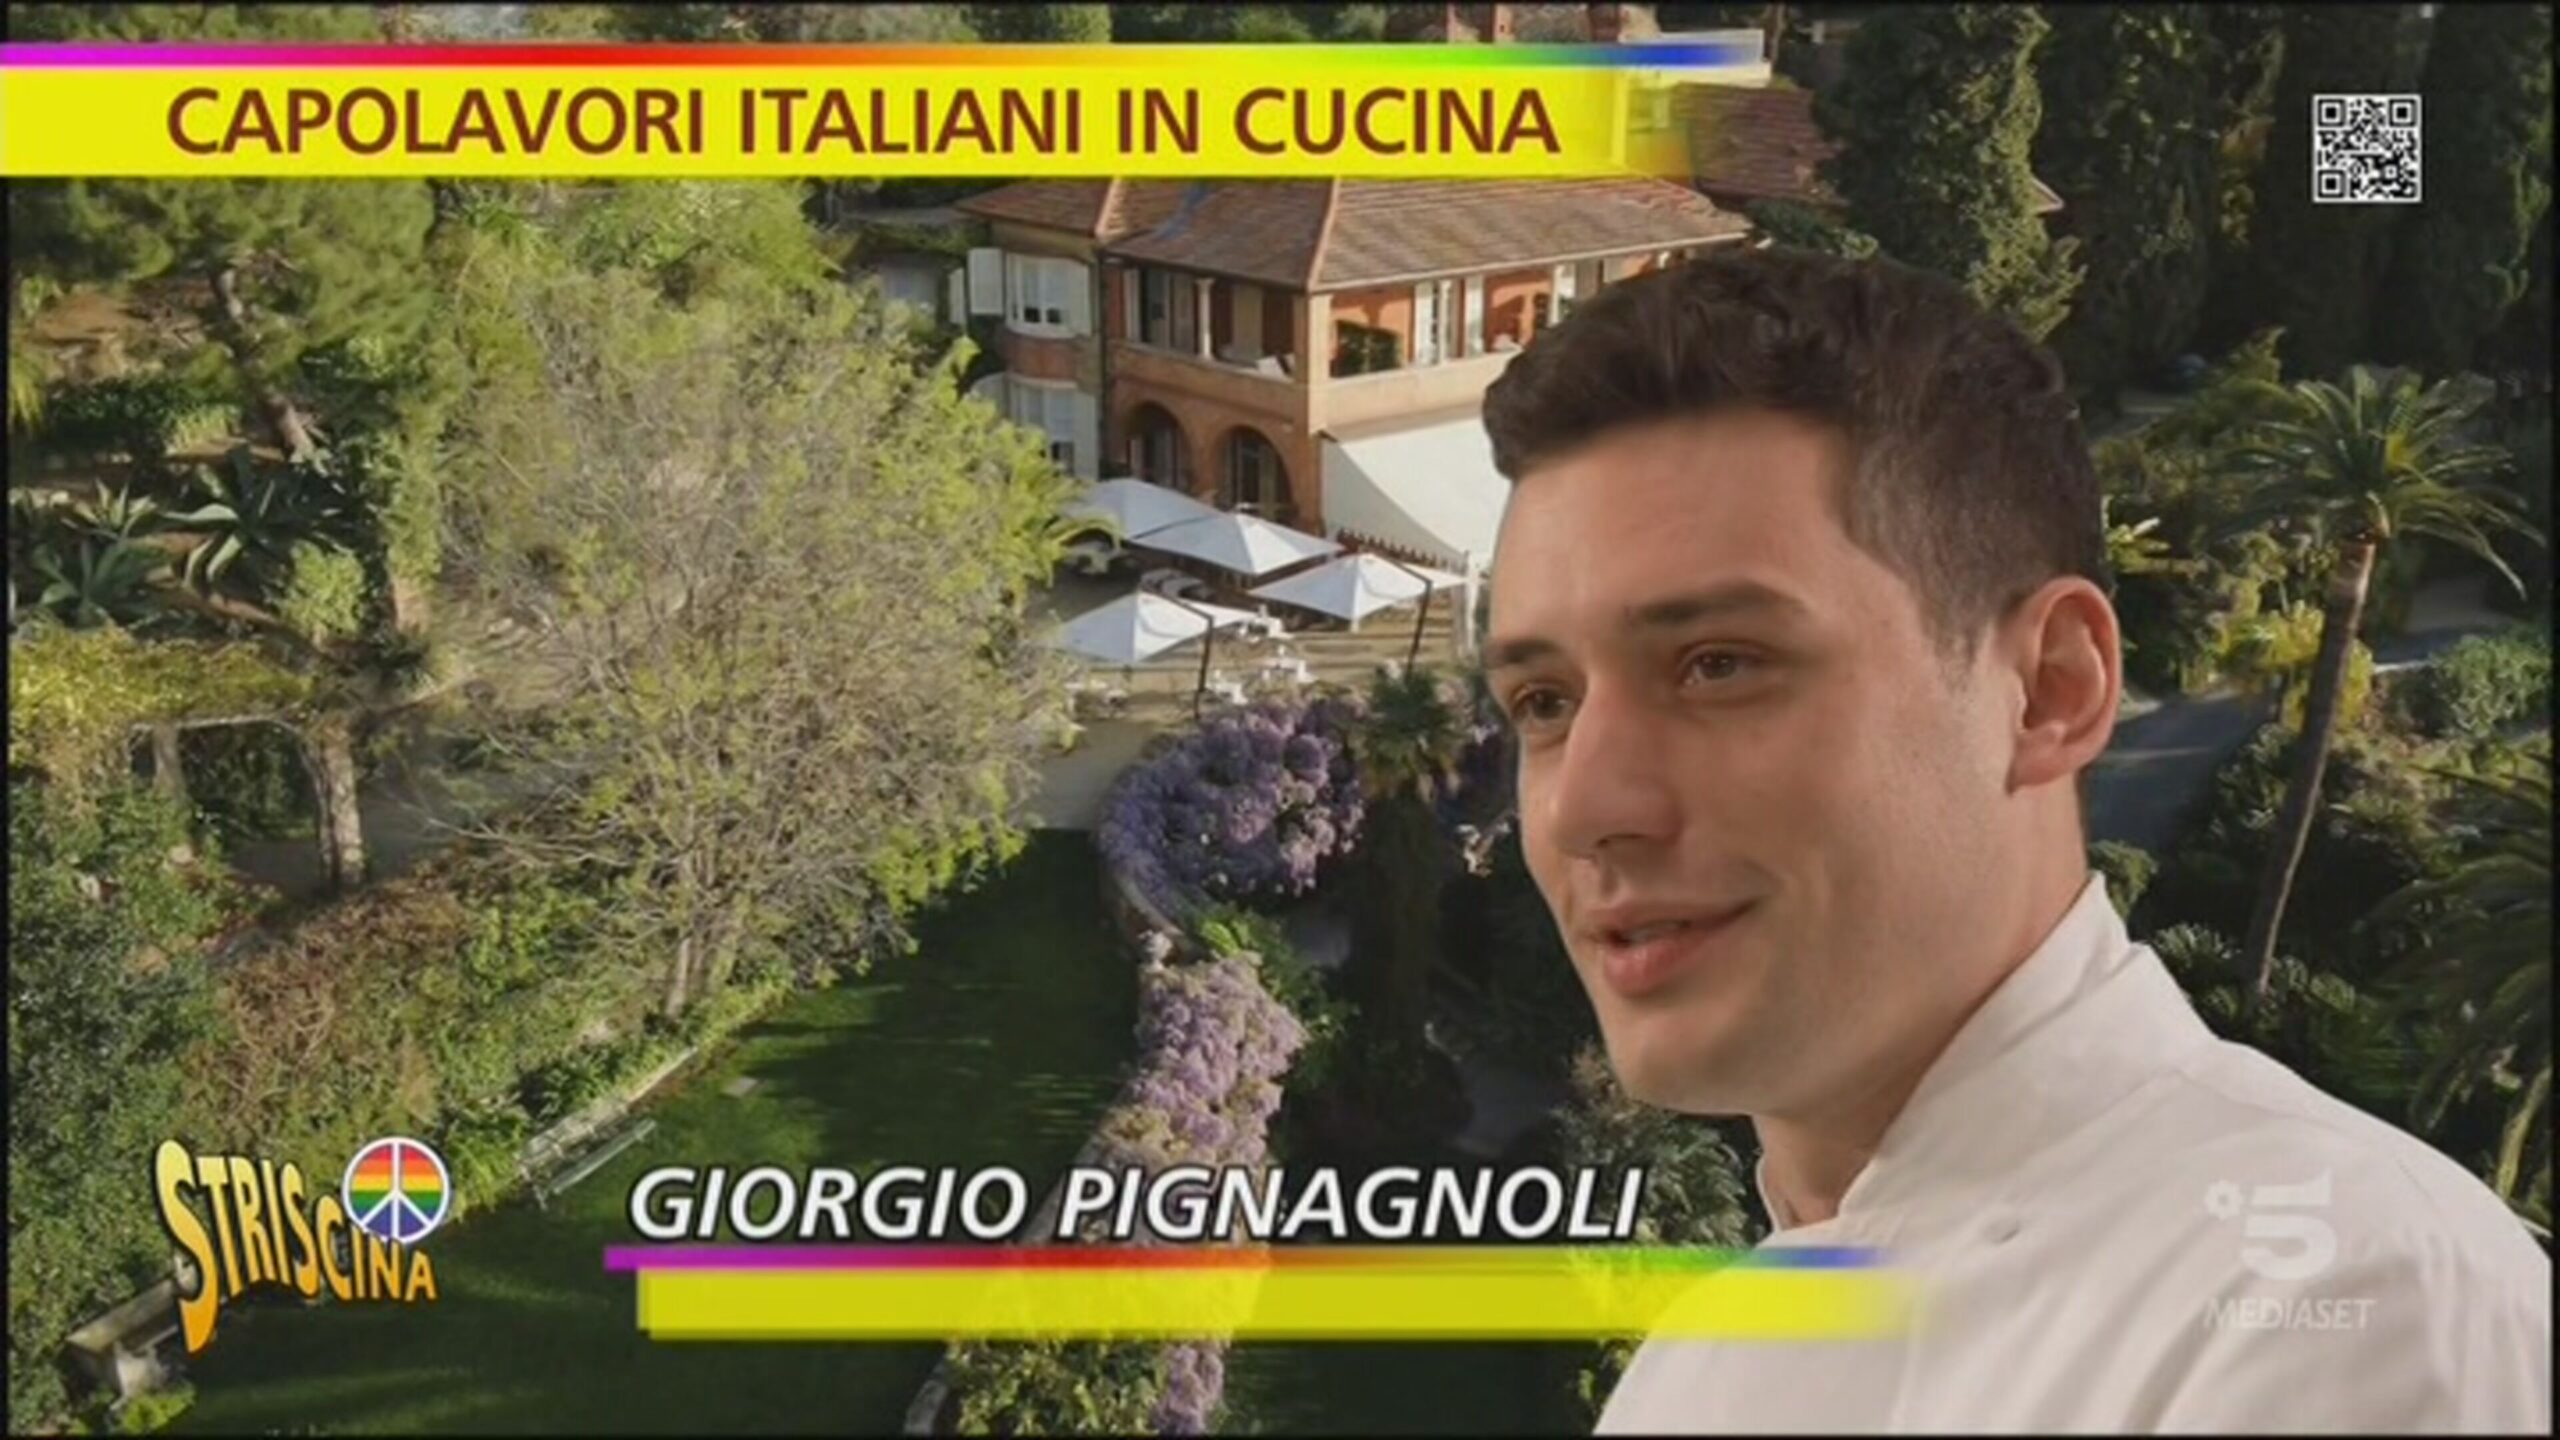 Capolavori italiani in cucina, il segreto di Pignagnoli